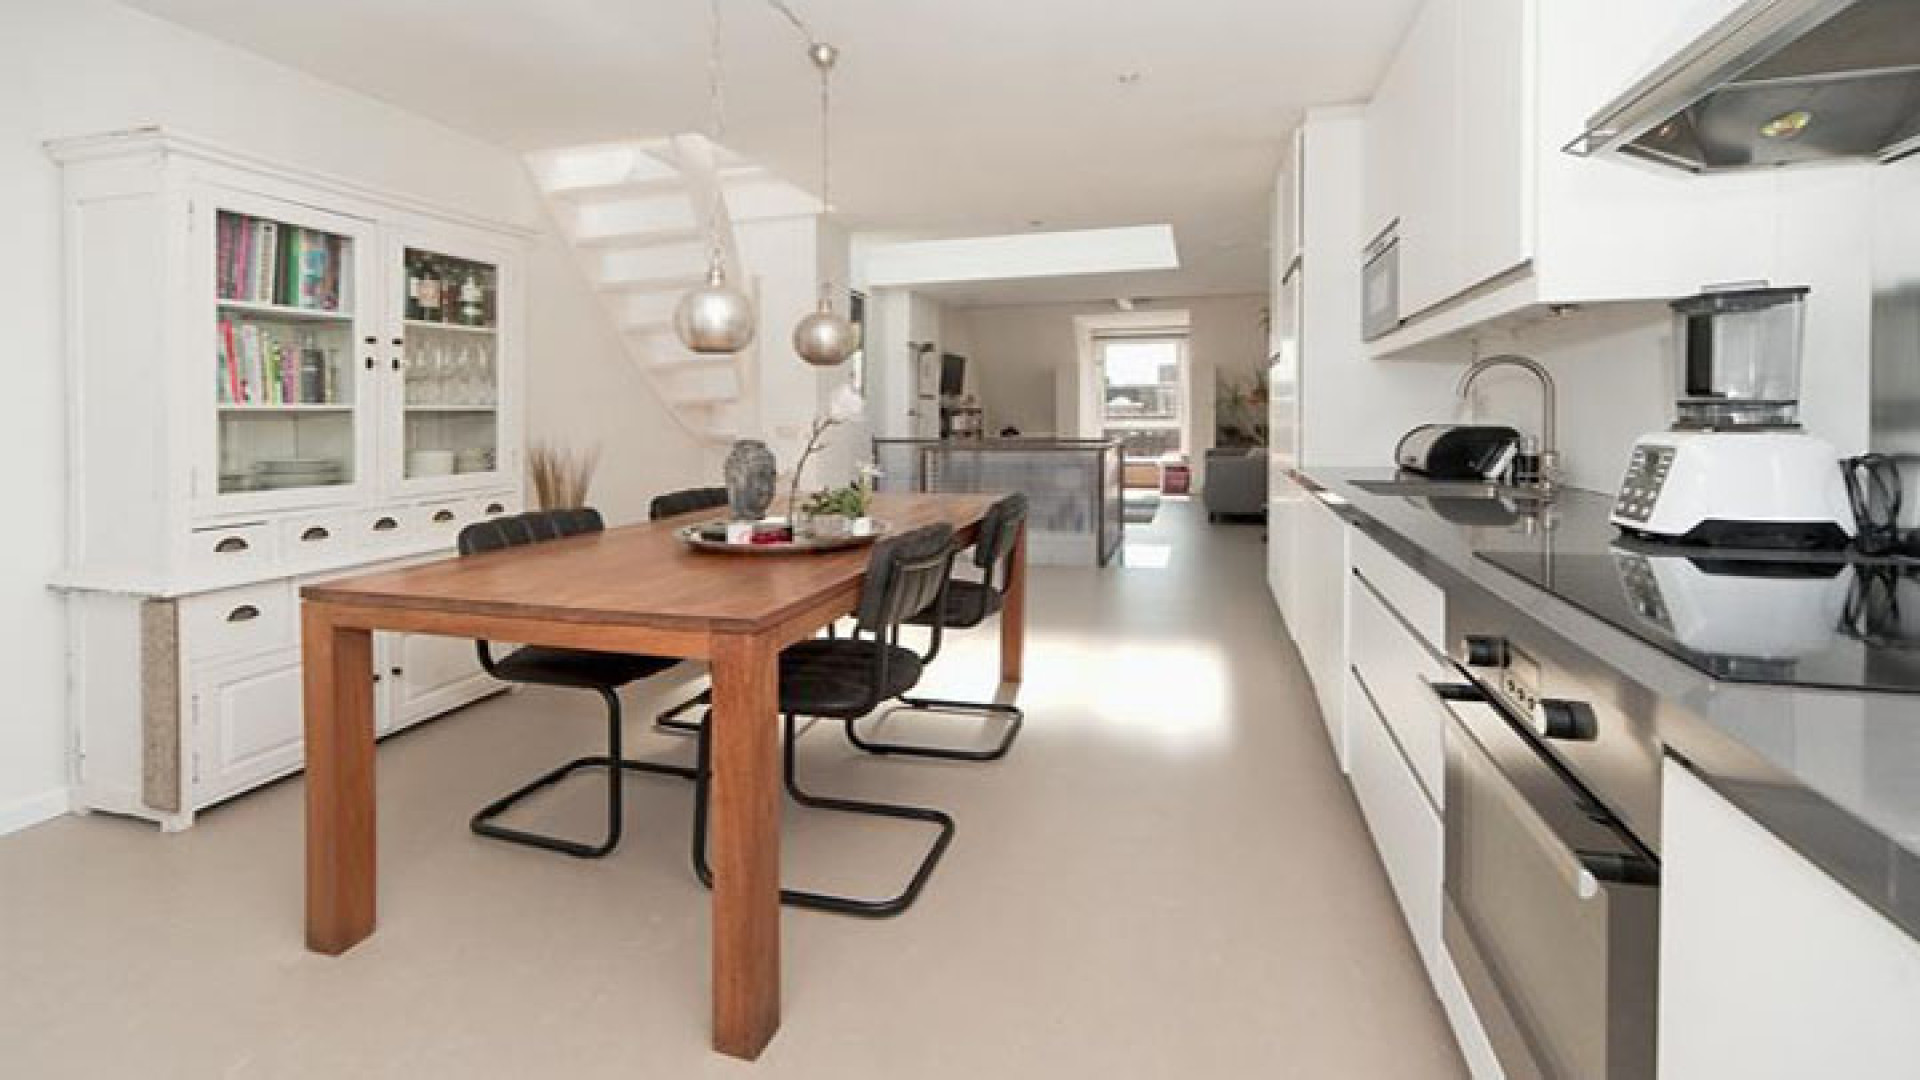 Cas Jansen verkoopt eindelijk zijn design huis. Zie foto's